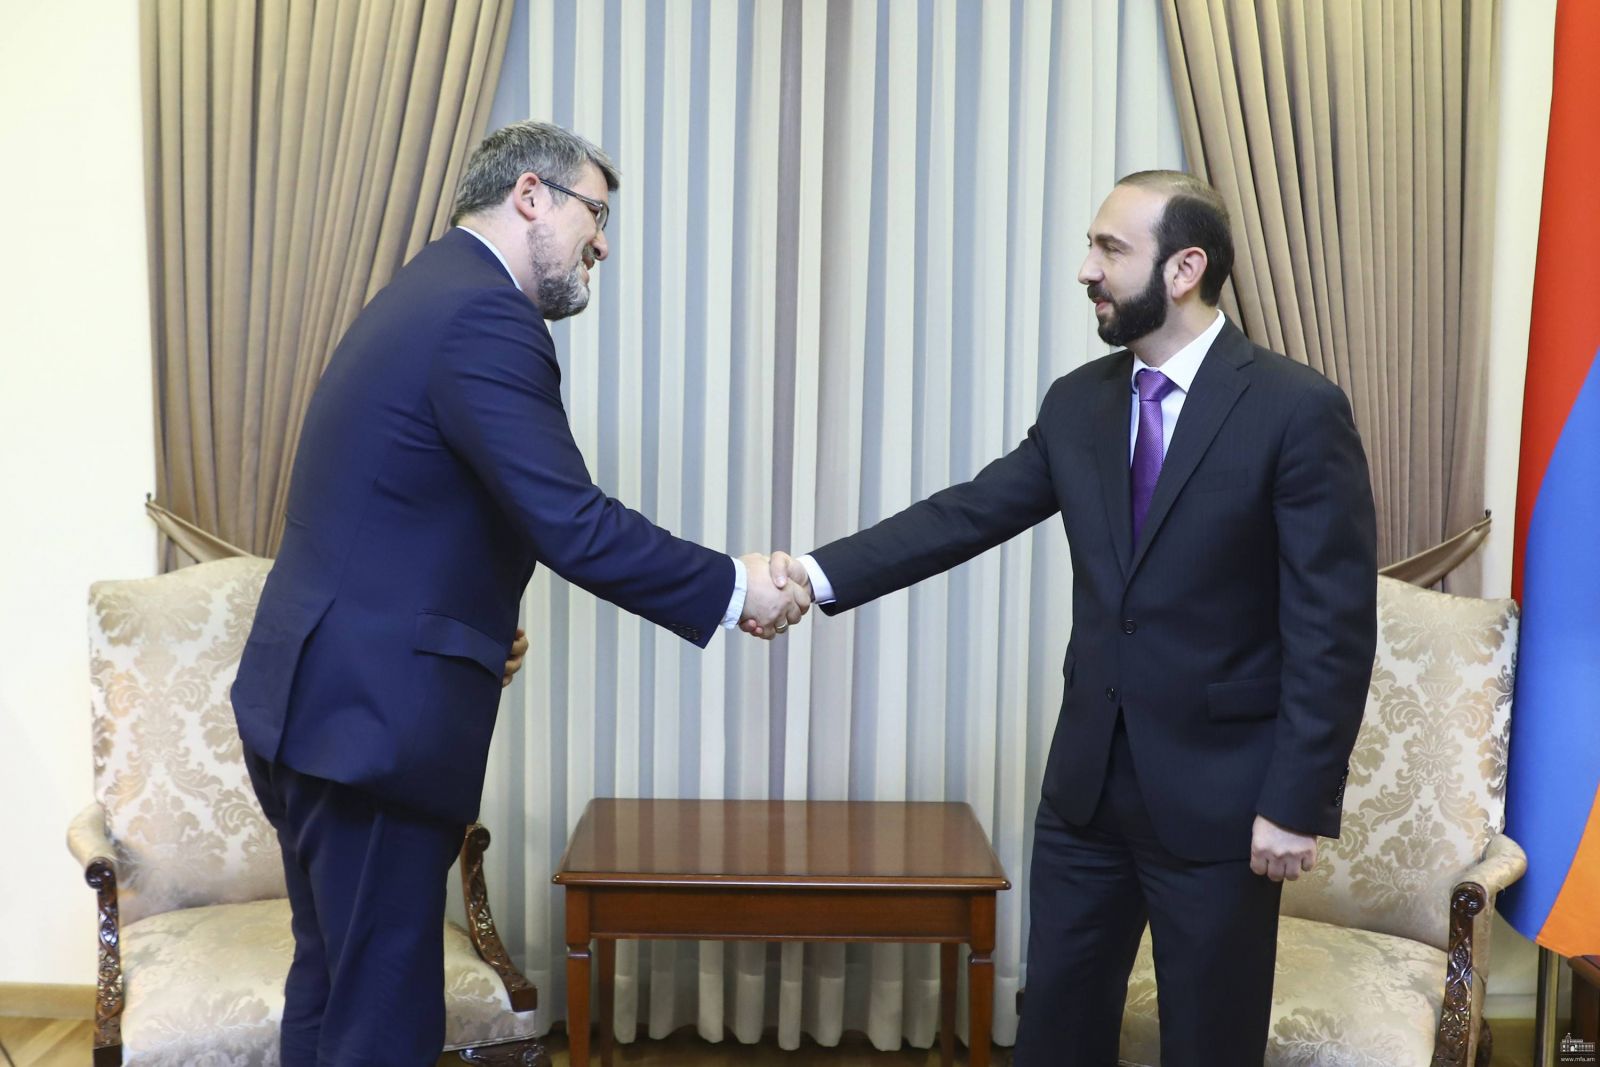 Քաղաքական խորհրդակցություններ Հայաստանի և Սերբիայի ԱԳՆ-ների միջև. քննարկվել են միջպետական կապերն ամրապնդելու հնարավորությունները